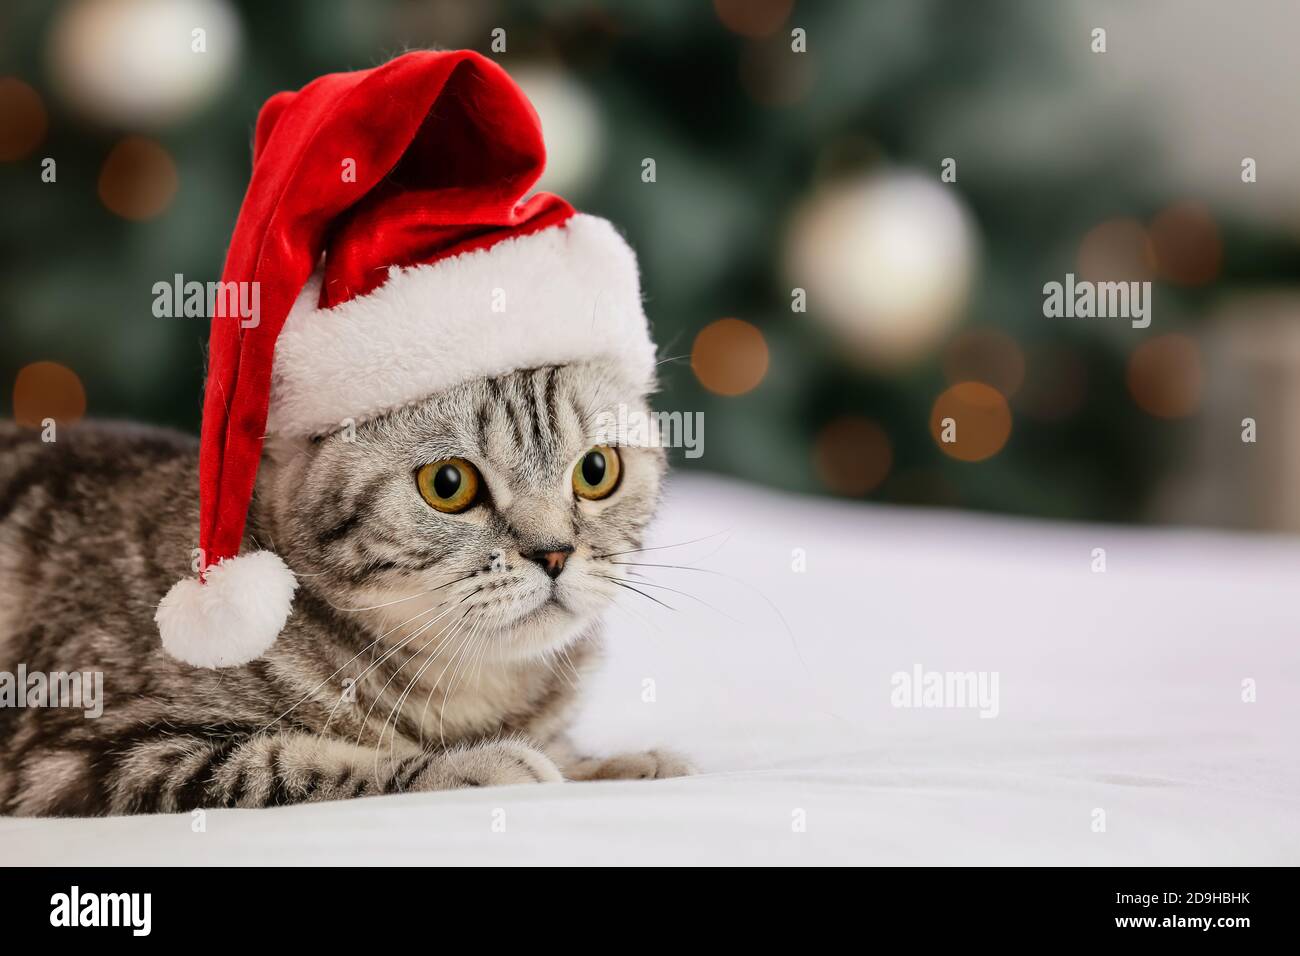 Nette lustige Katze in Weihnachtsmütze zu Hause an Weihnachten eve  Stockfotografie - Alamy